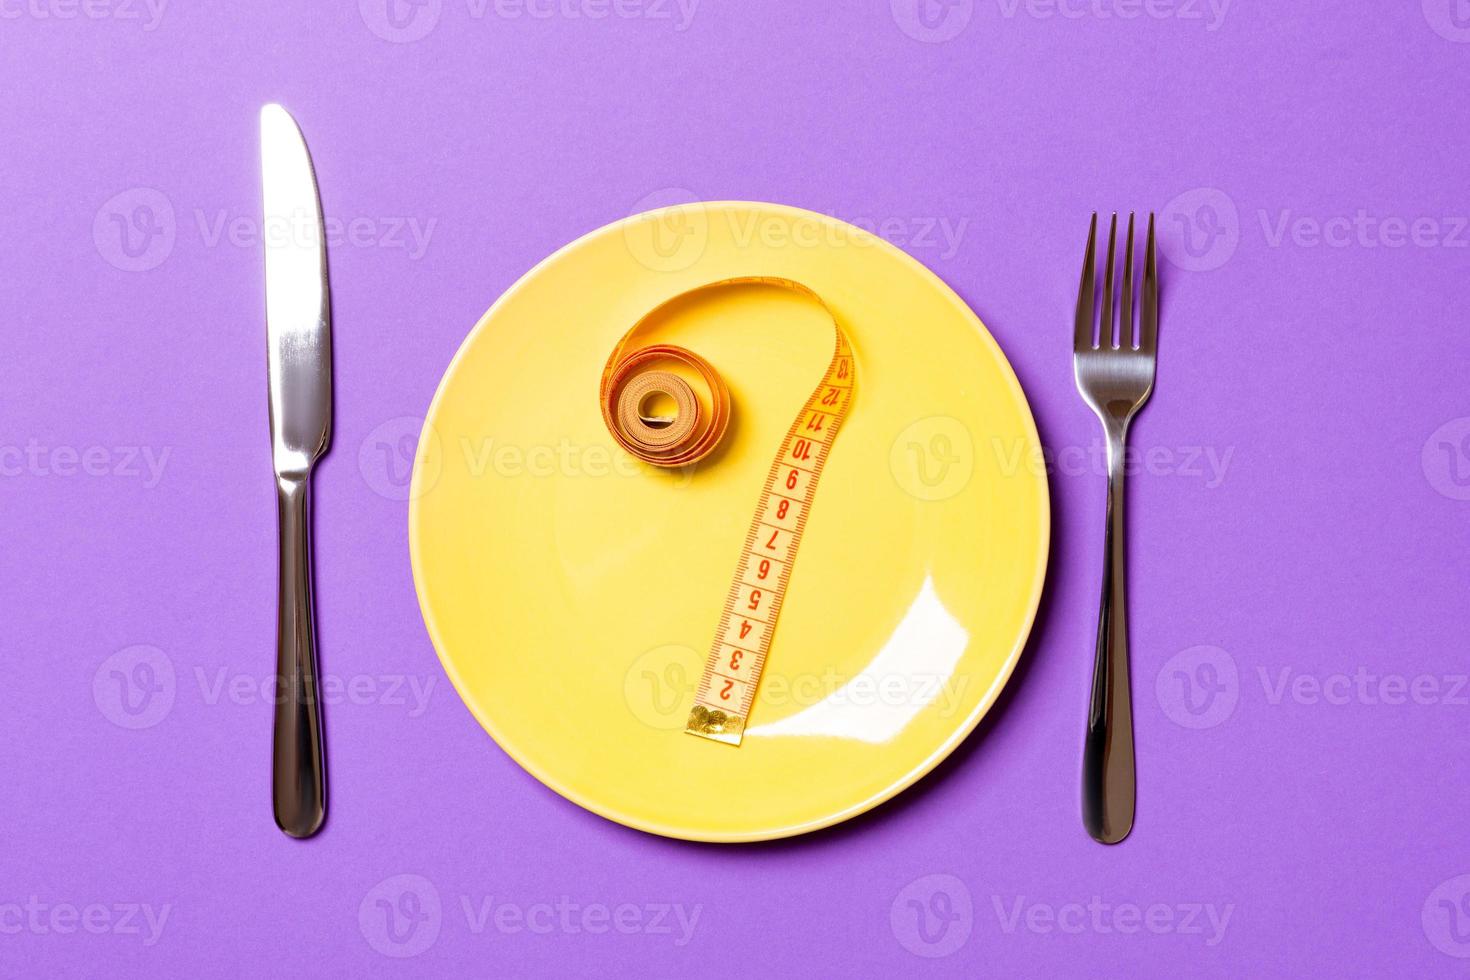 Fragezeichen aus Maßband auf runder Platte auf violettem Hintergrund. Draufsicht auf Zögern und Diätkonzept foto